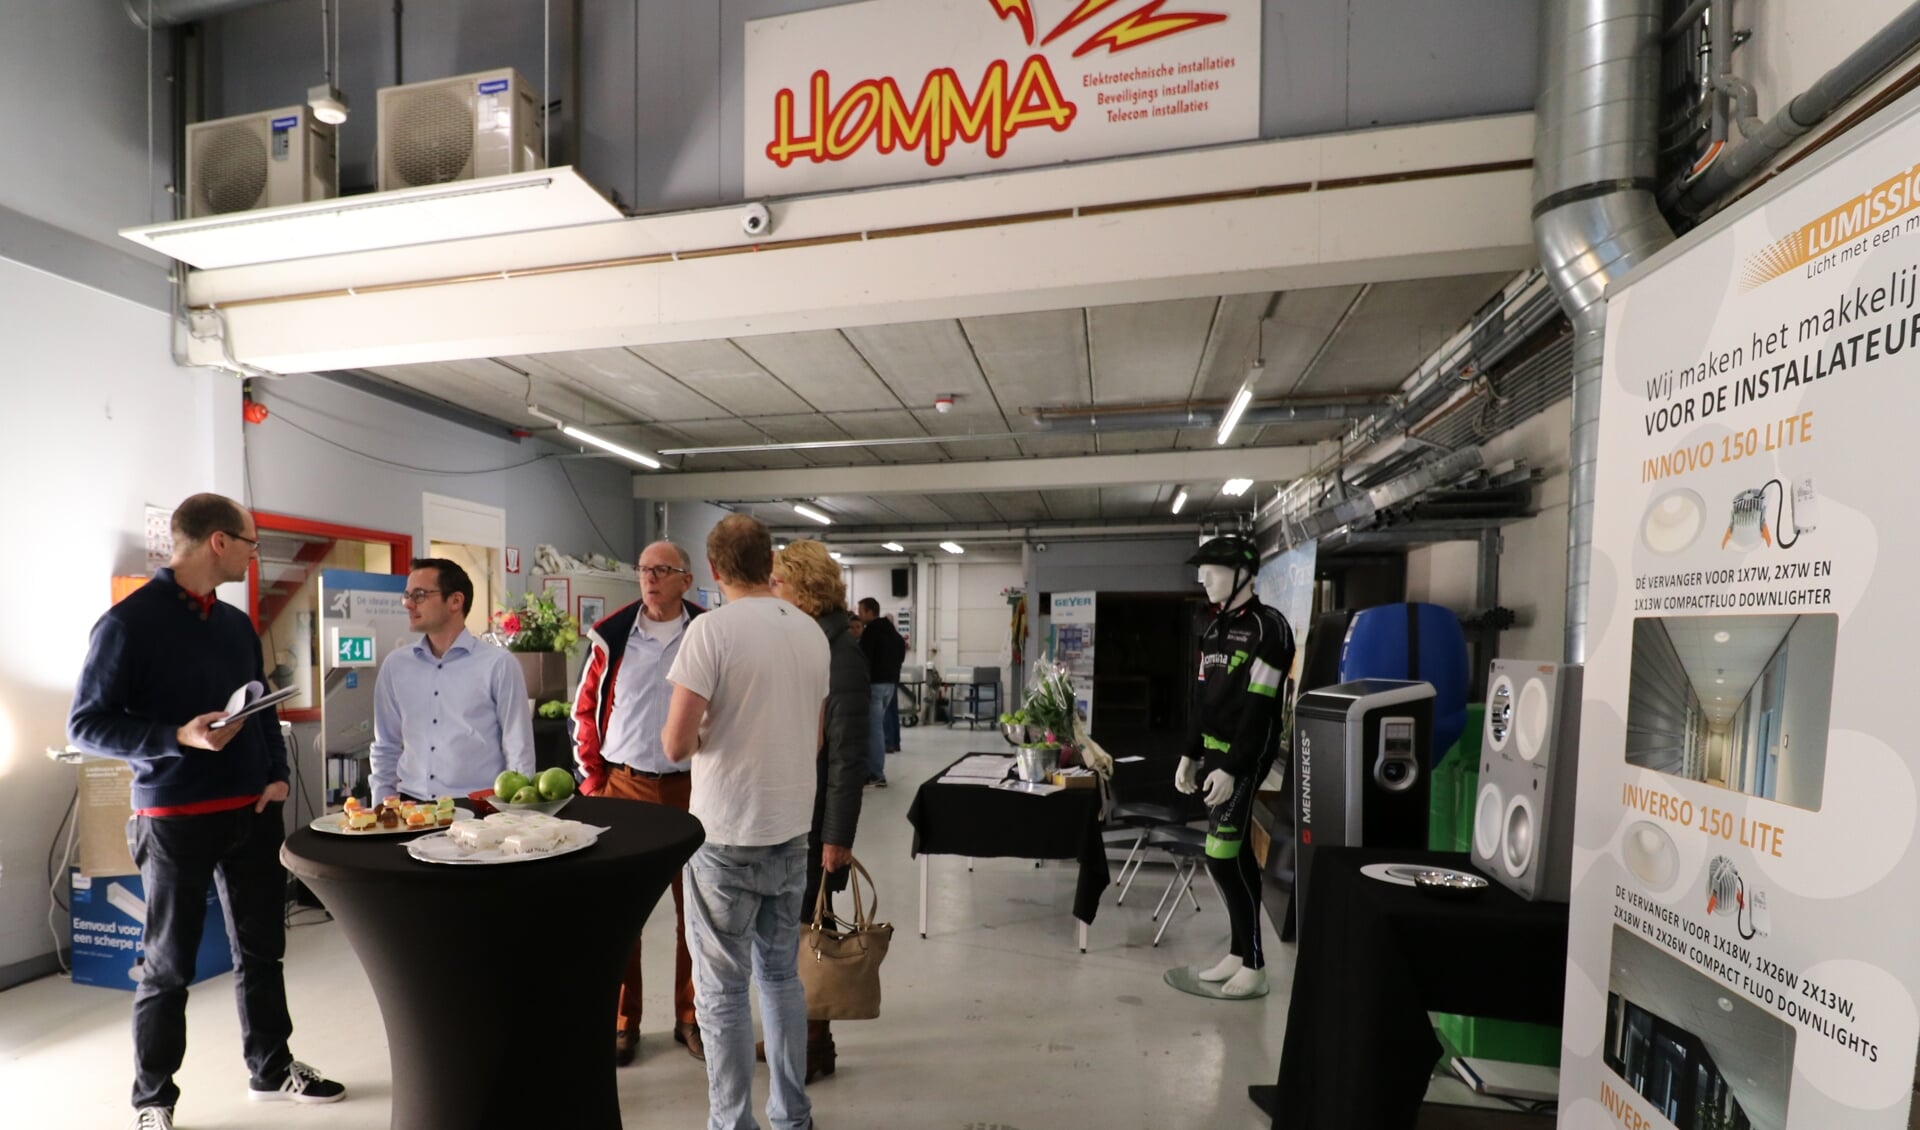 Tijdens de open dag bij Homma konden bezoekers de uitbreiding van het bedrijfspand zien, meedoen aan een prijsvraag en de innovatieve elektrotechnische oplossingen van het bedrijf bekijken. 